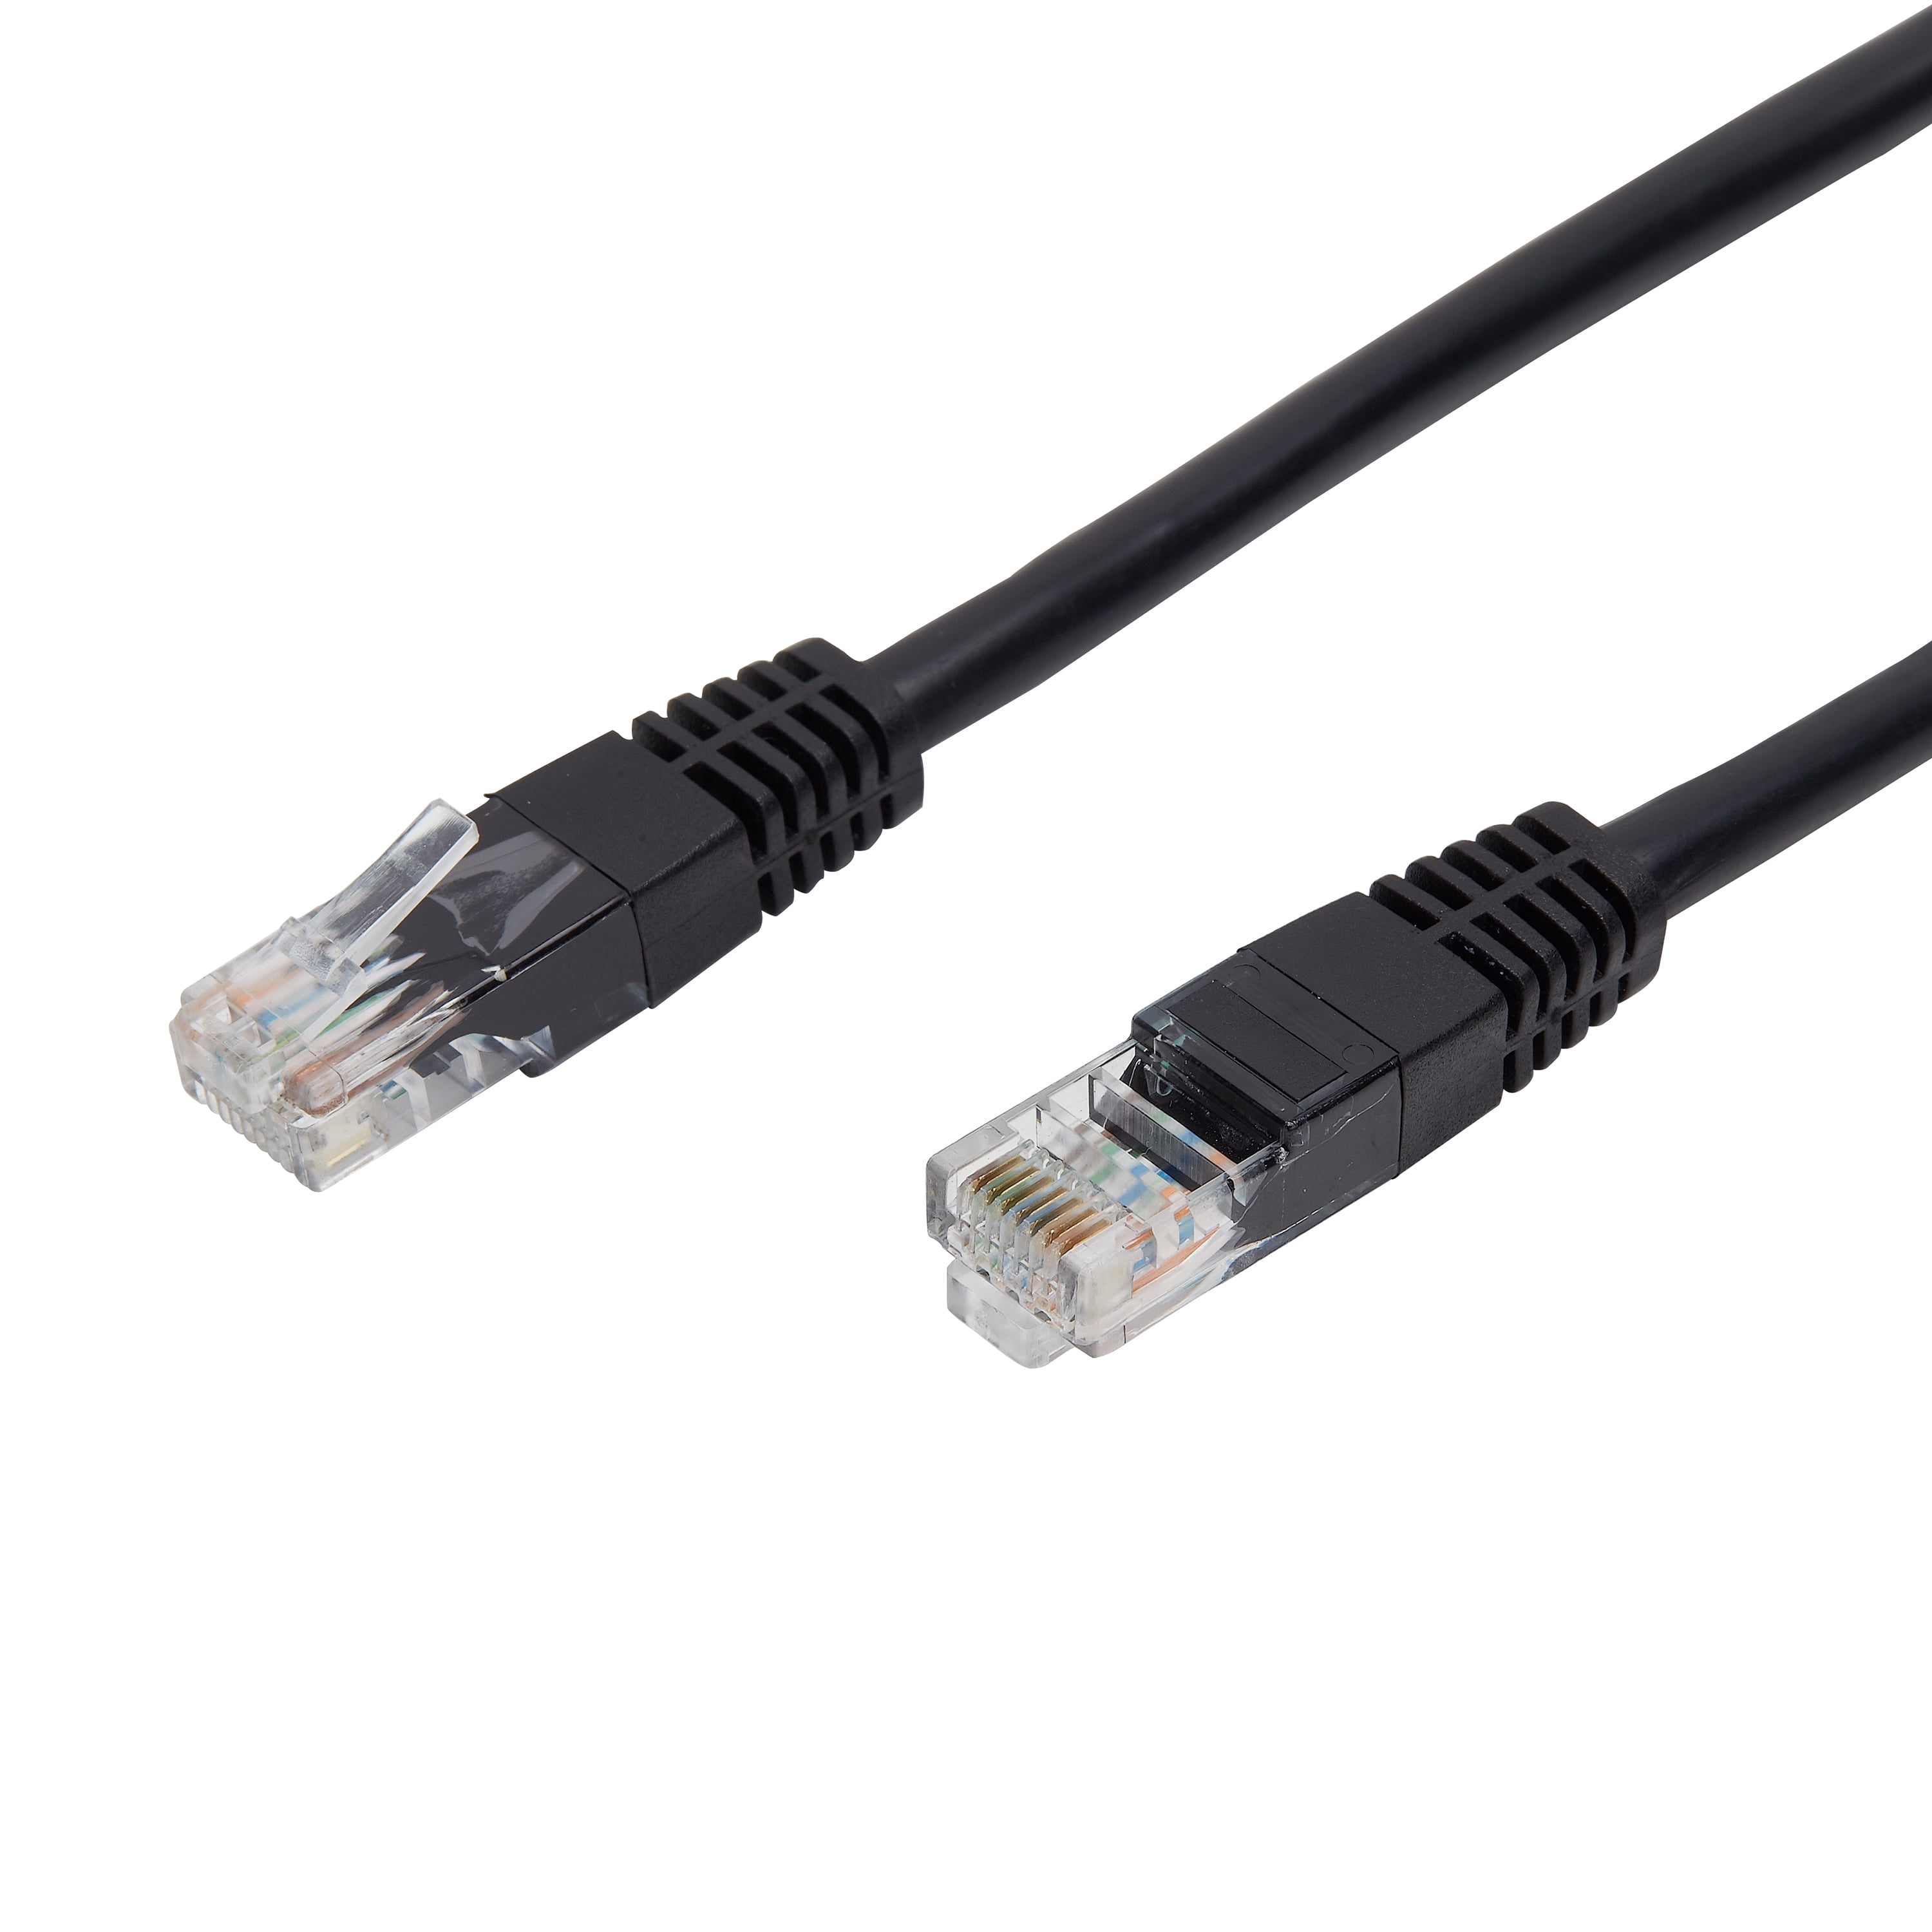 Cable De Red Ethernet Internet 20 Metros Rj45 Cat 6 Plano